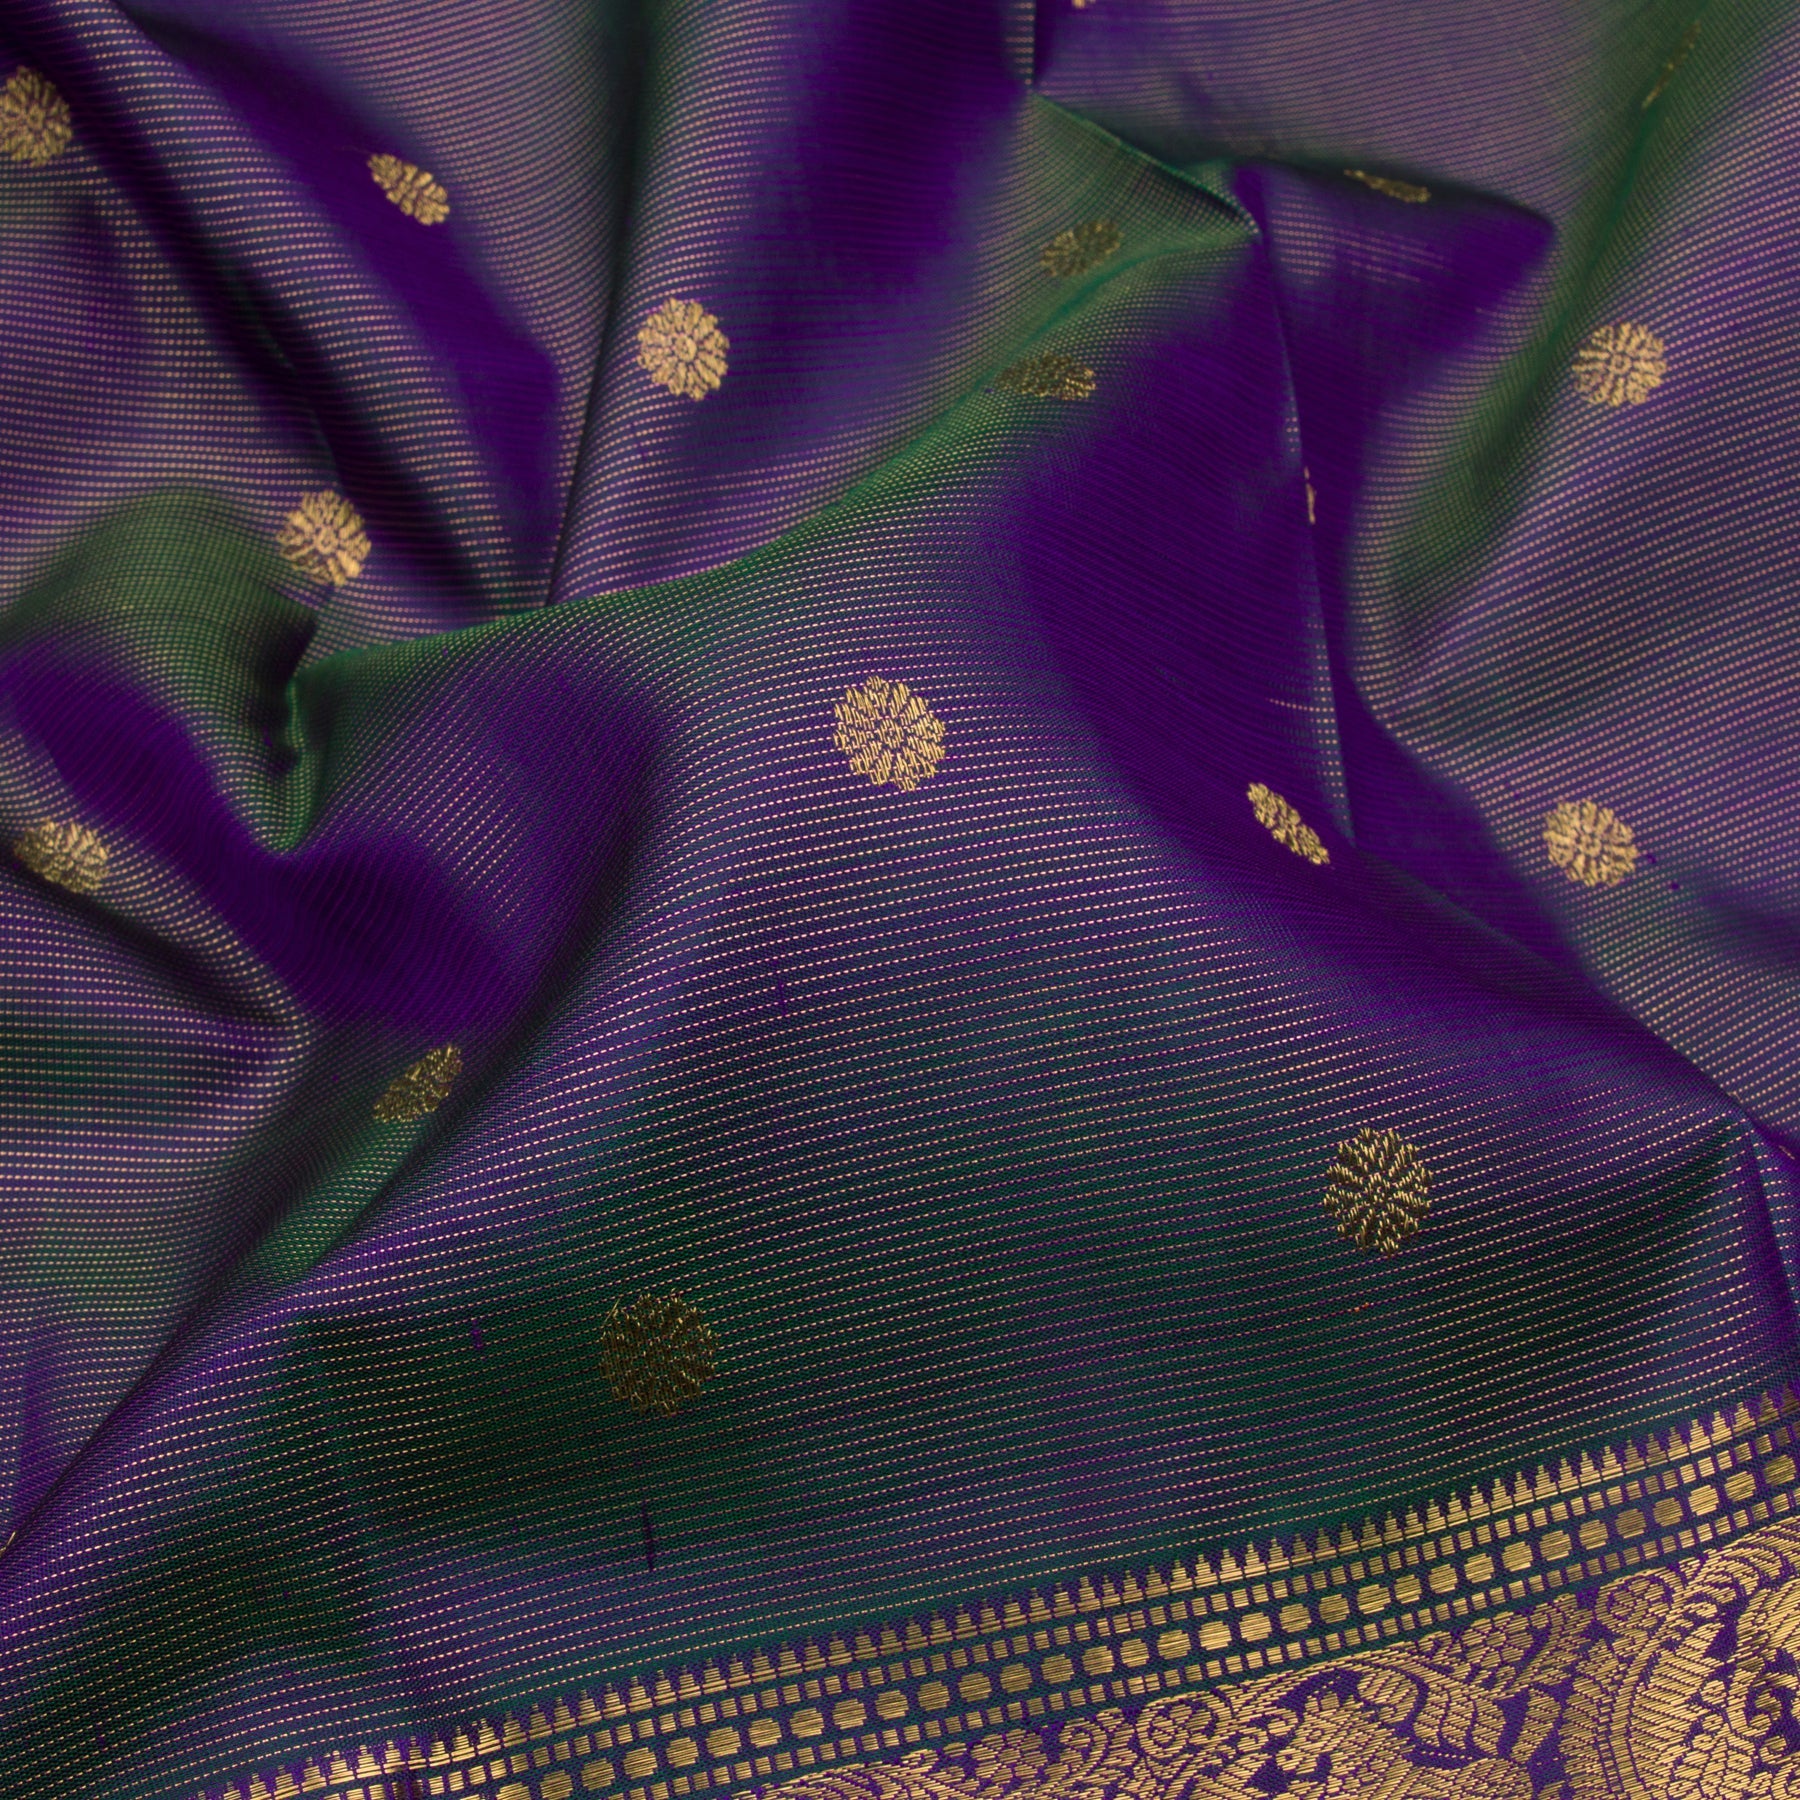 Kanakavalli Kanjivaram Silk Sari 22-110-HS001-12537 - Fabric View